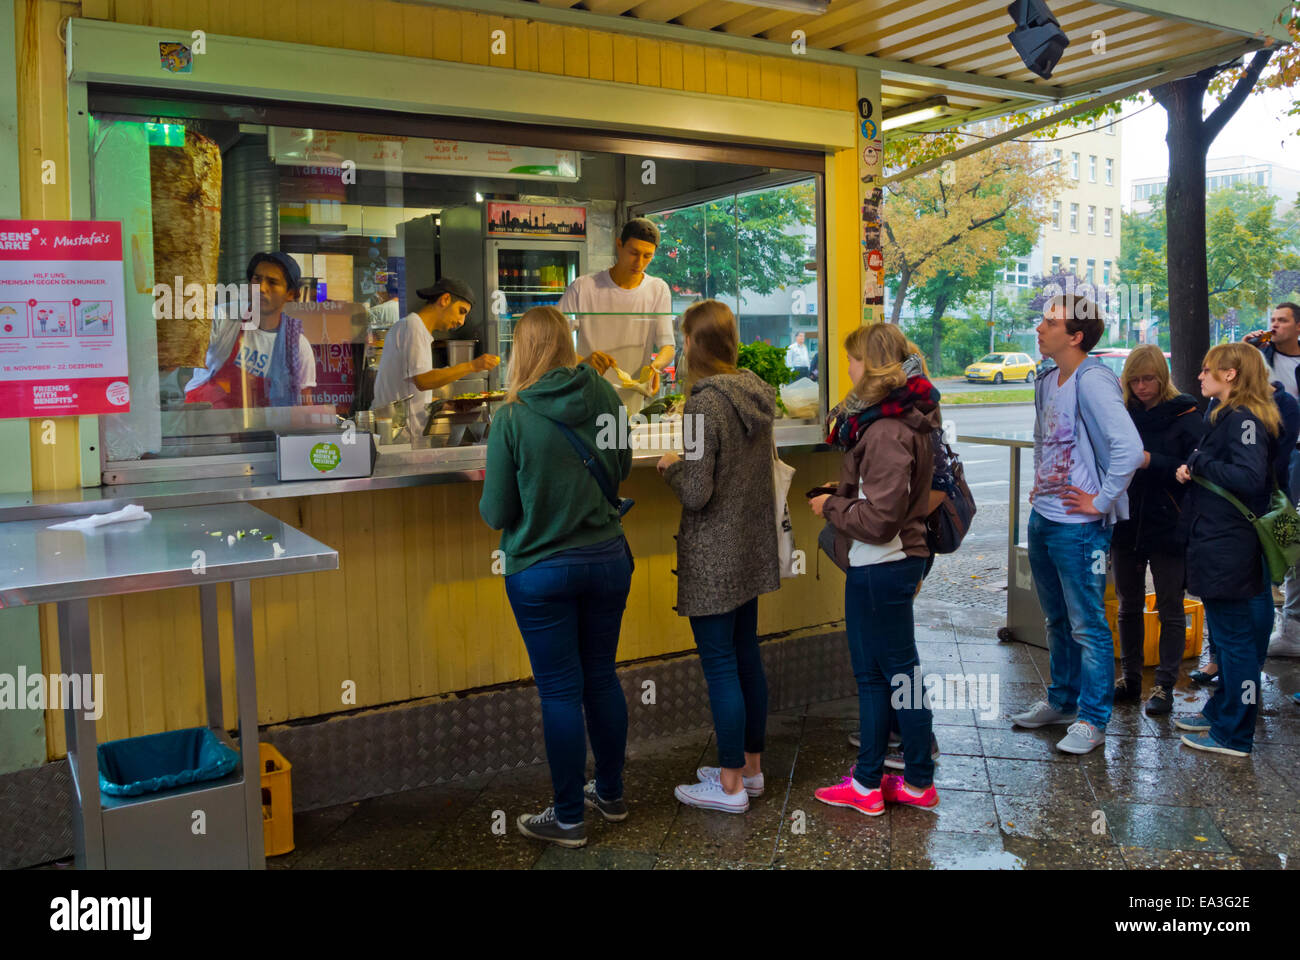 Mustafa's Gemüse Kebap, stall selling vegetarian and normal döner gyros kebab, Mehringdamm street, Kreuzberg, west Berlin, Germa Stock Photo